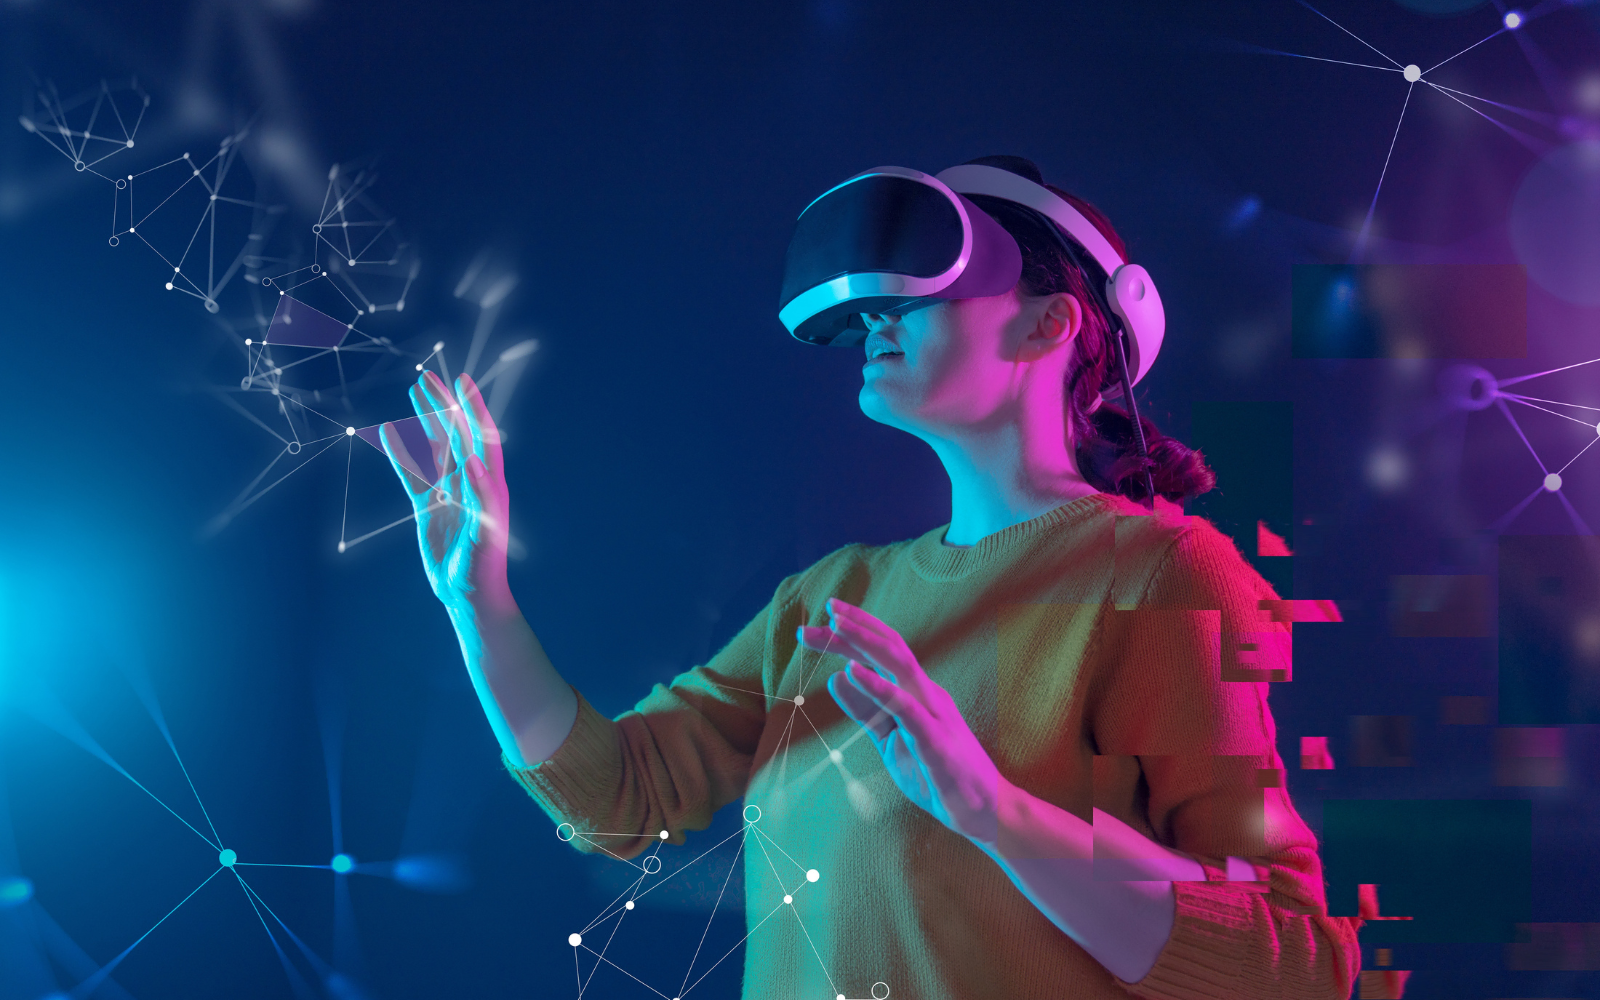 图片展示一位女性正戴着虚拟现实头盔，似乎在与数字化的图形互动，周围有光线和数据节点，科技感十足。